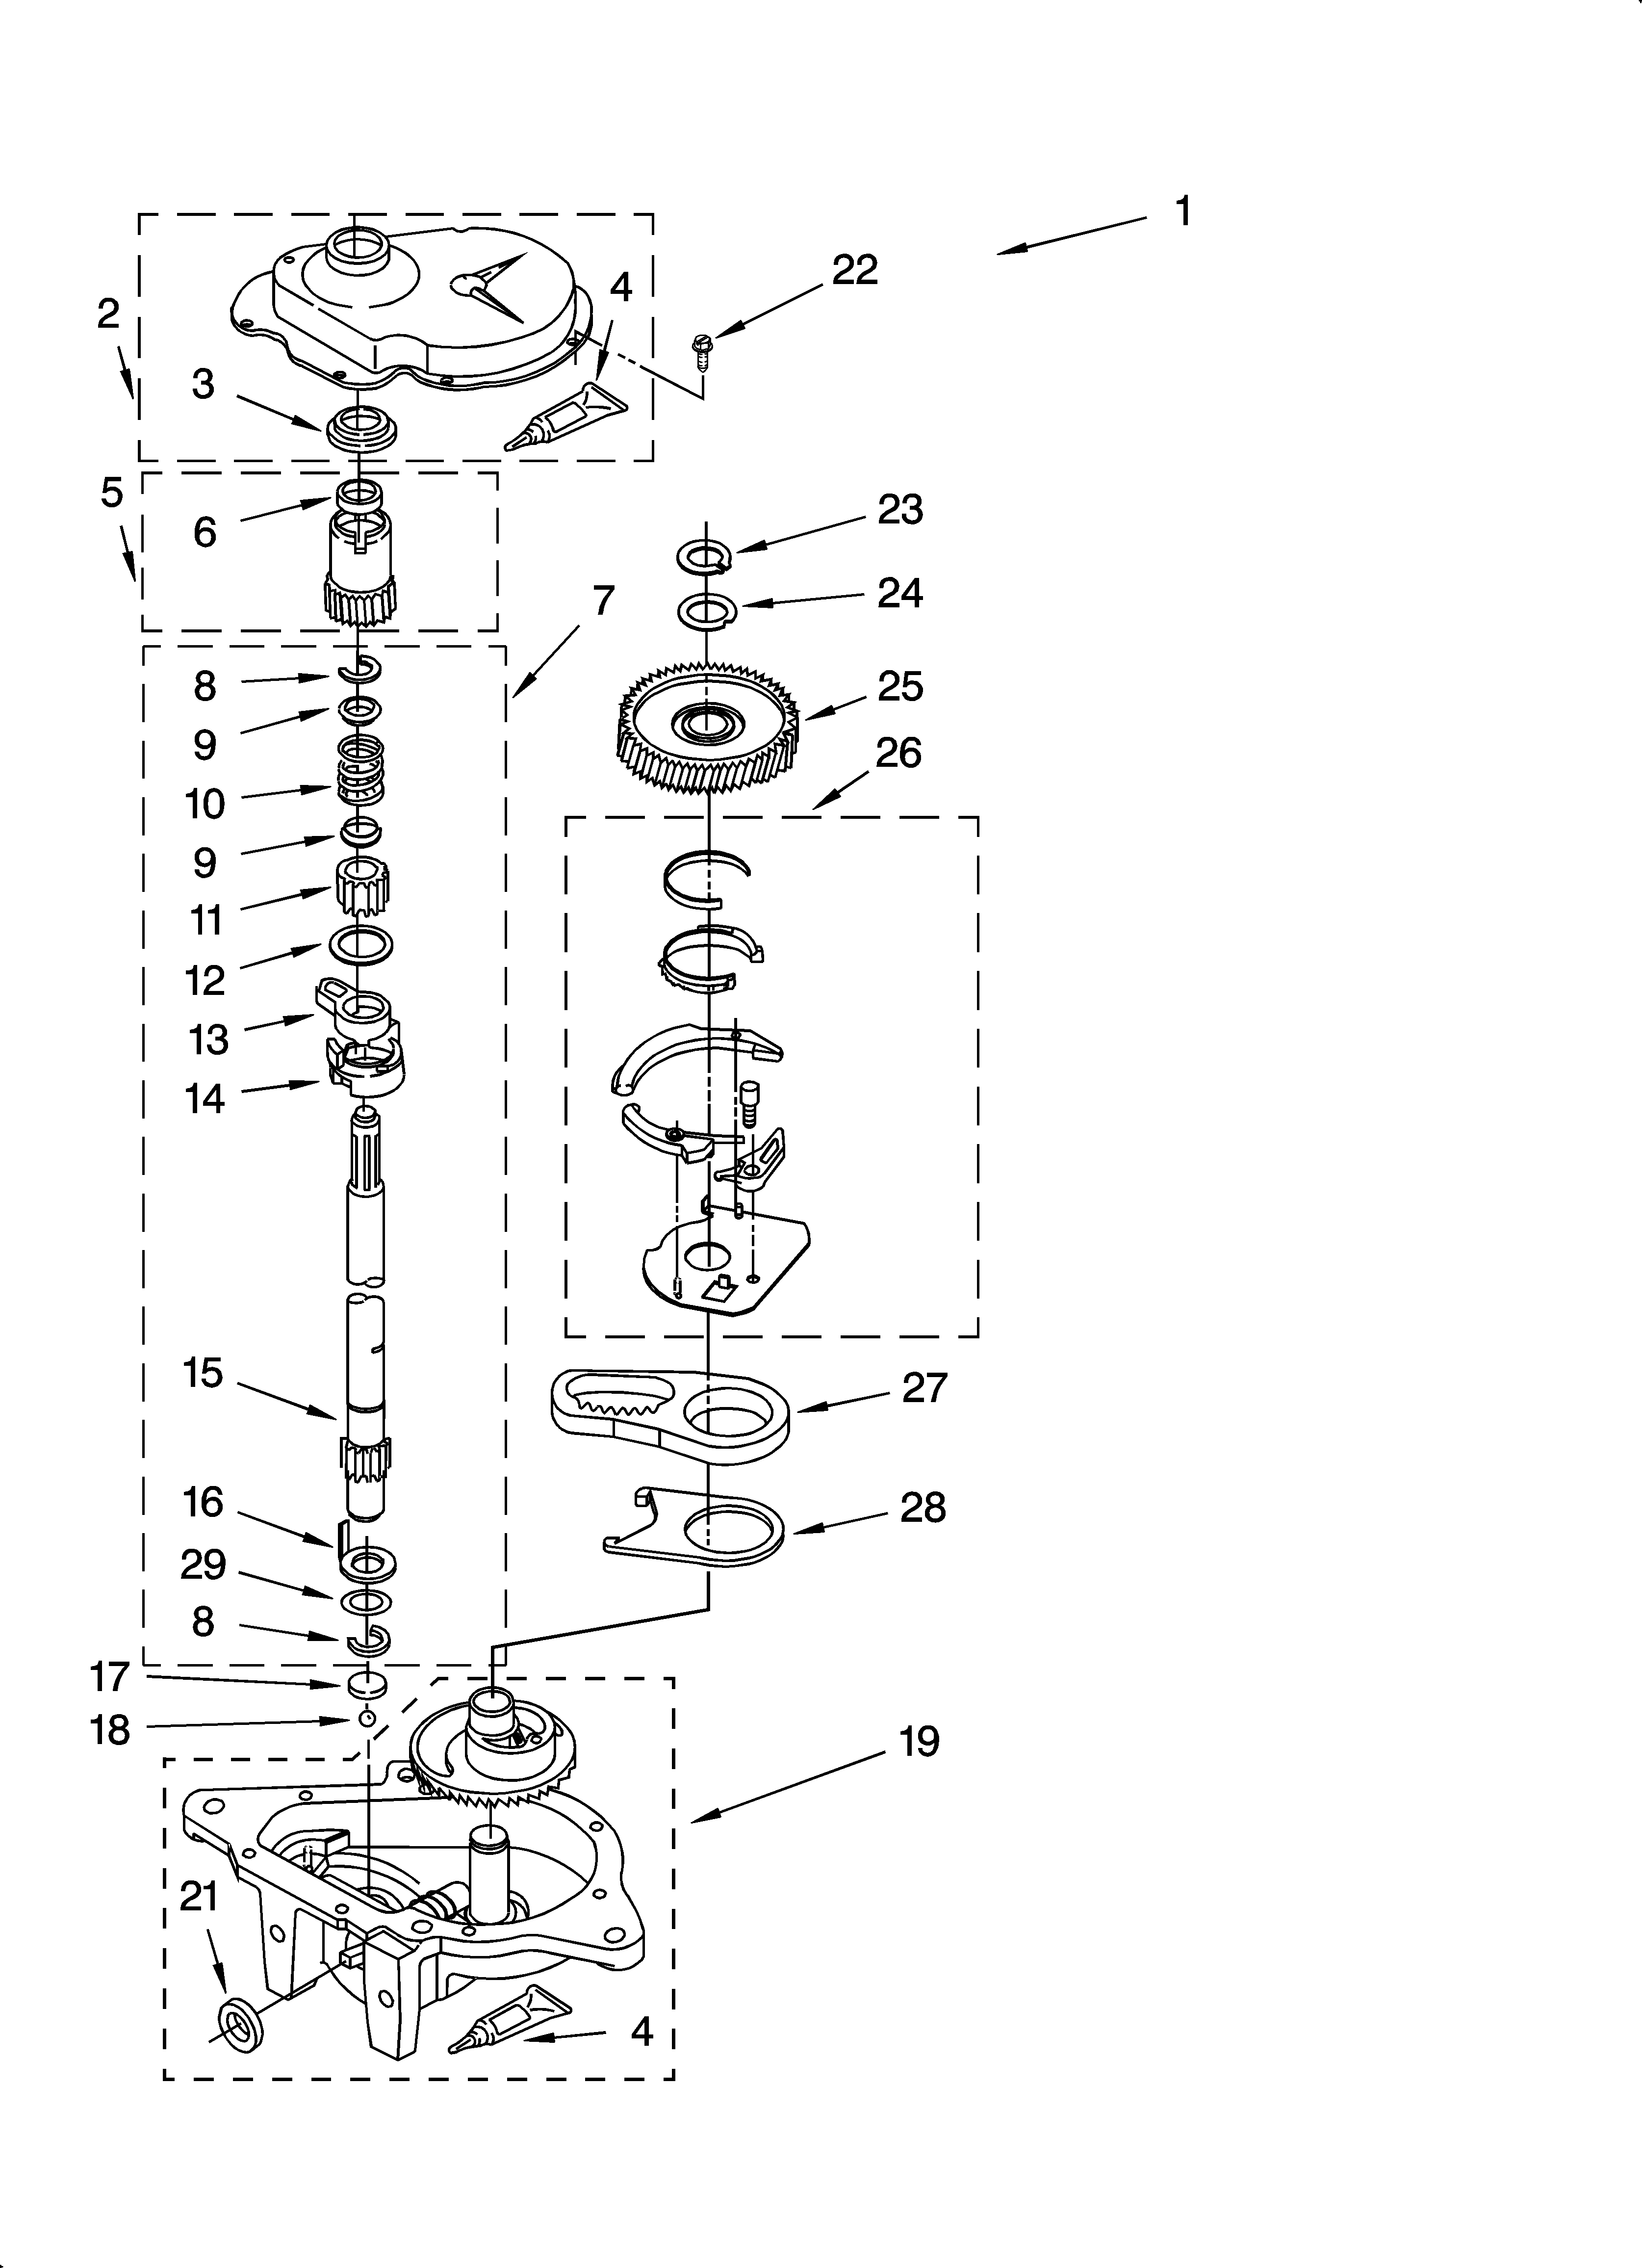 11027731600 wiring diagram